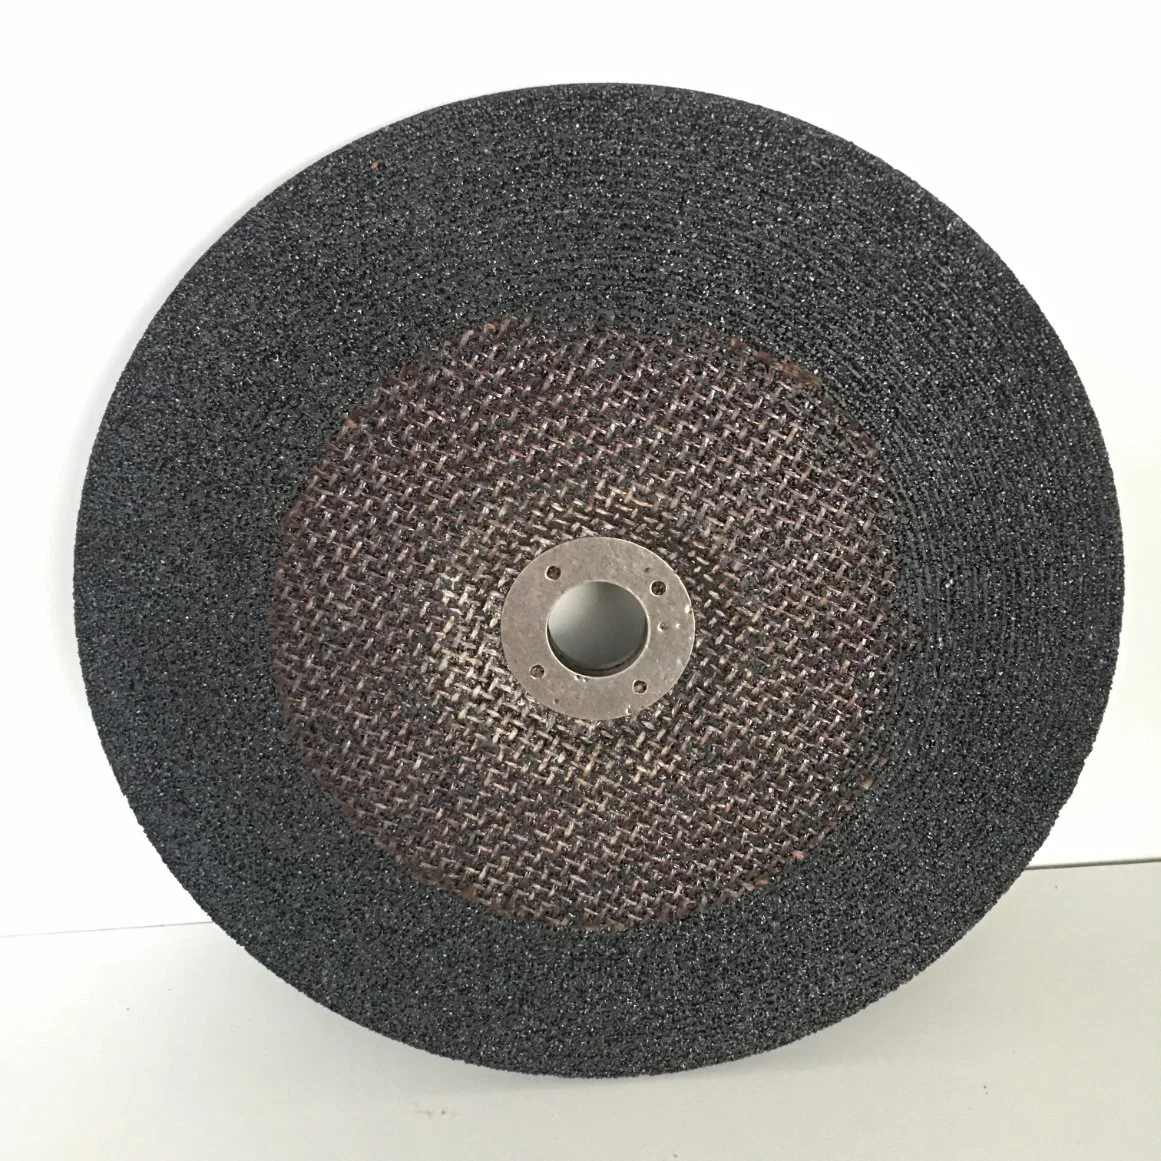 Roda de disco de lixa Yihong 125X6X22 mm T27 com Premium High Resina de densidade para polimento